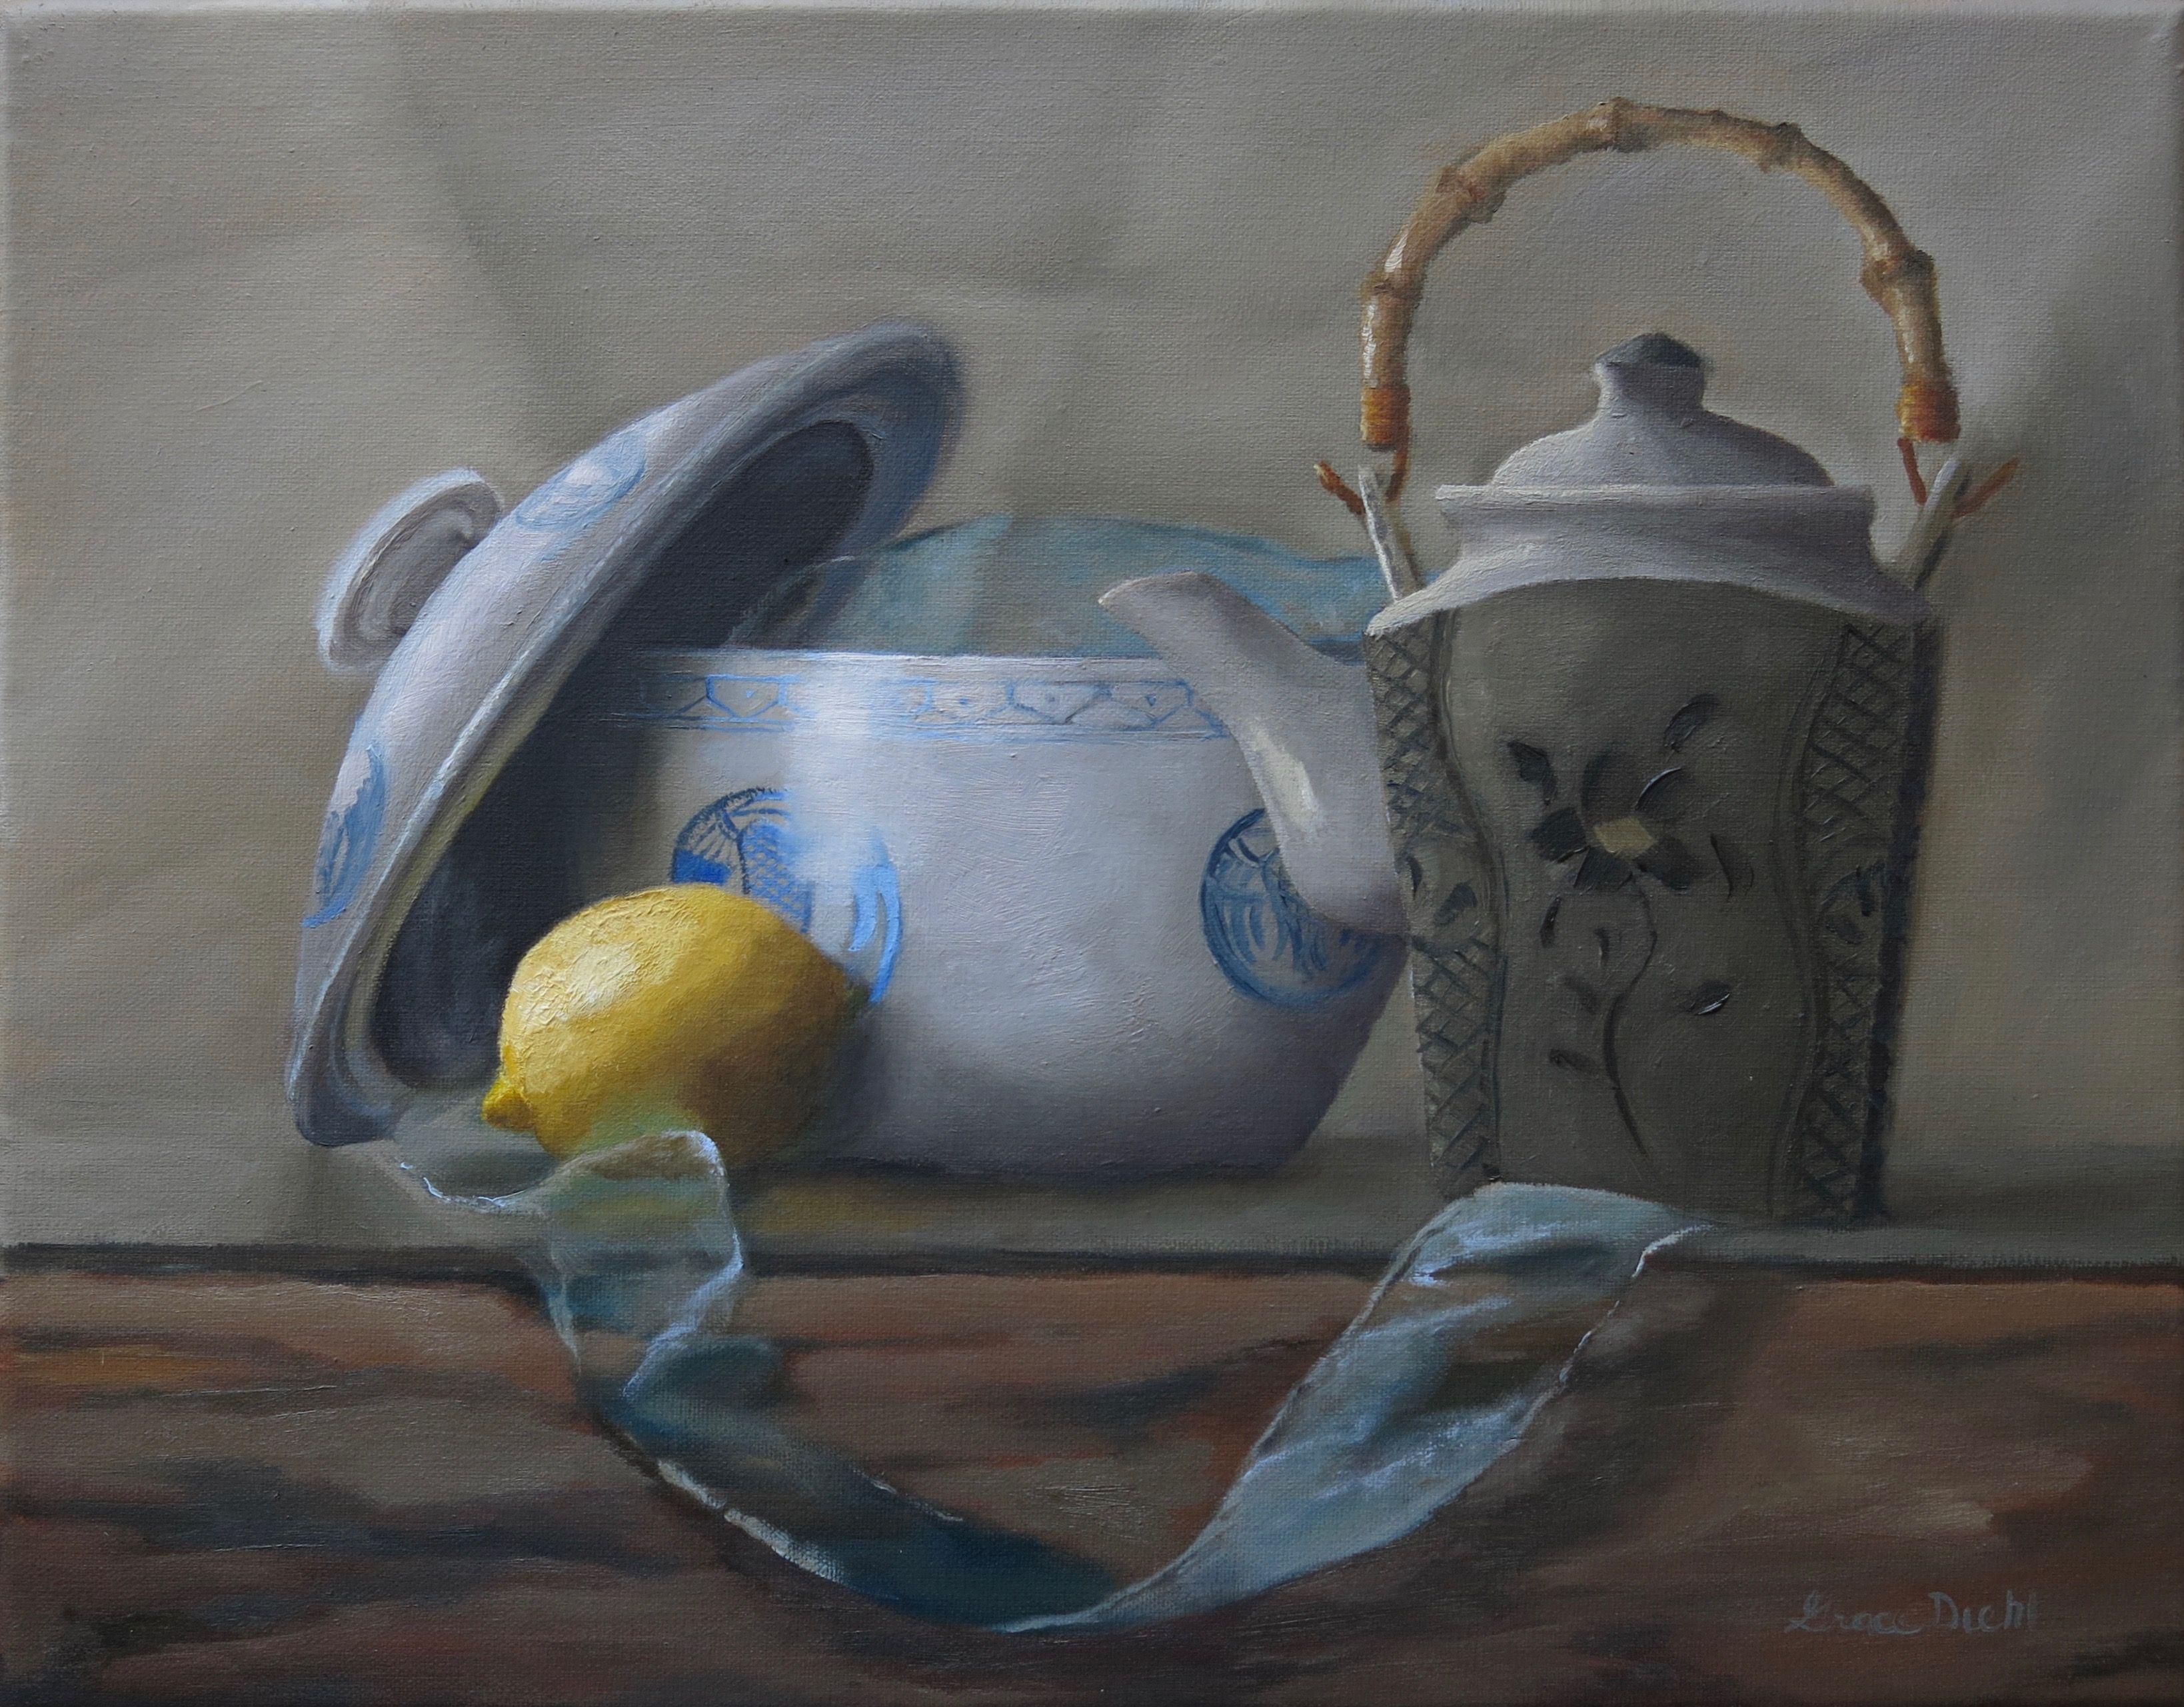 Tea with Lemon, Peinture, Huile sur Toile - Painting de Grace Diehl